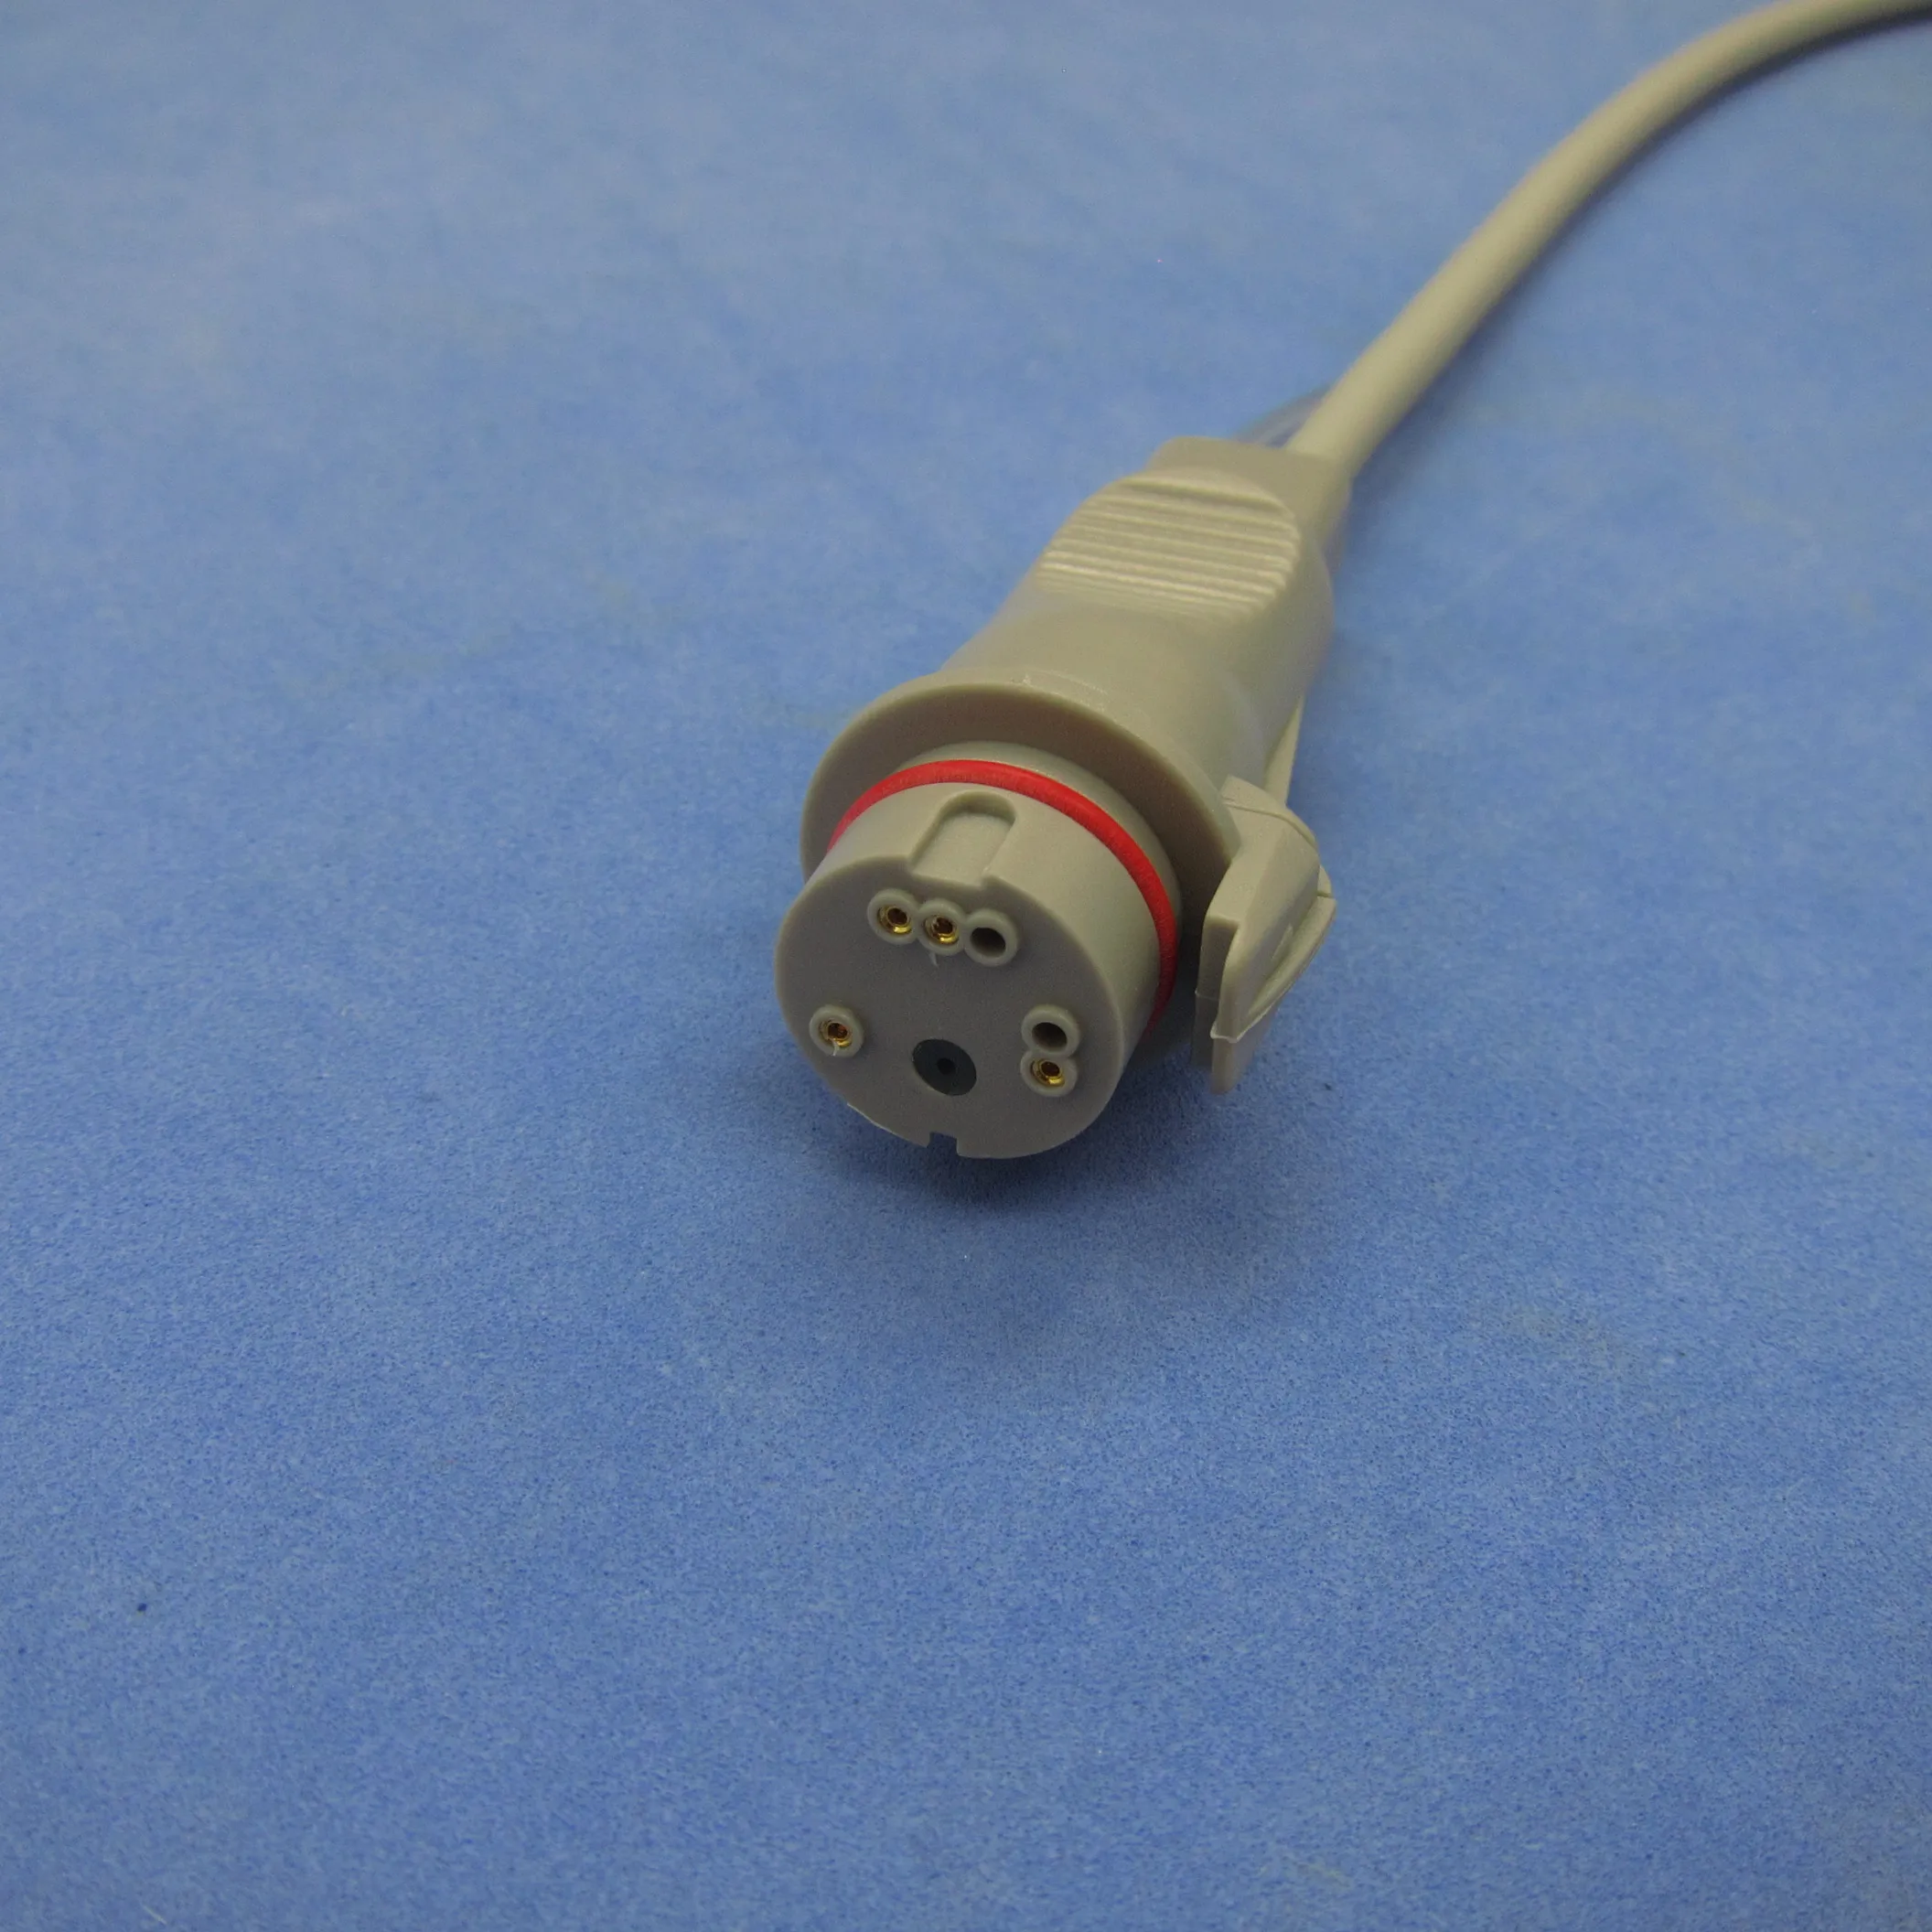 PHILI 12pin IBP кабель для BD одноразовый датчик давления| |